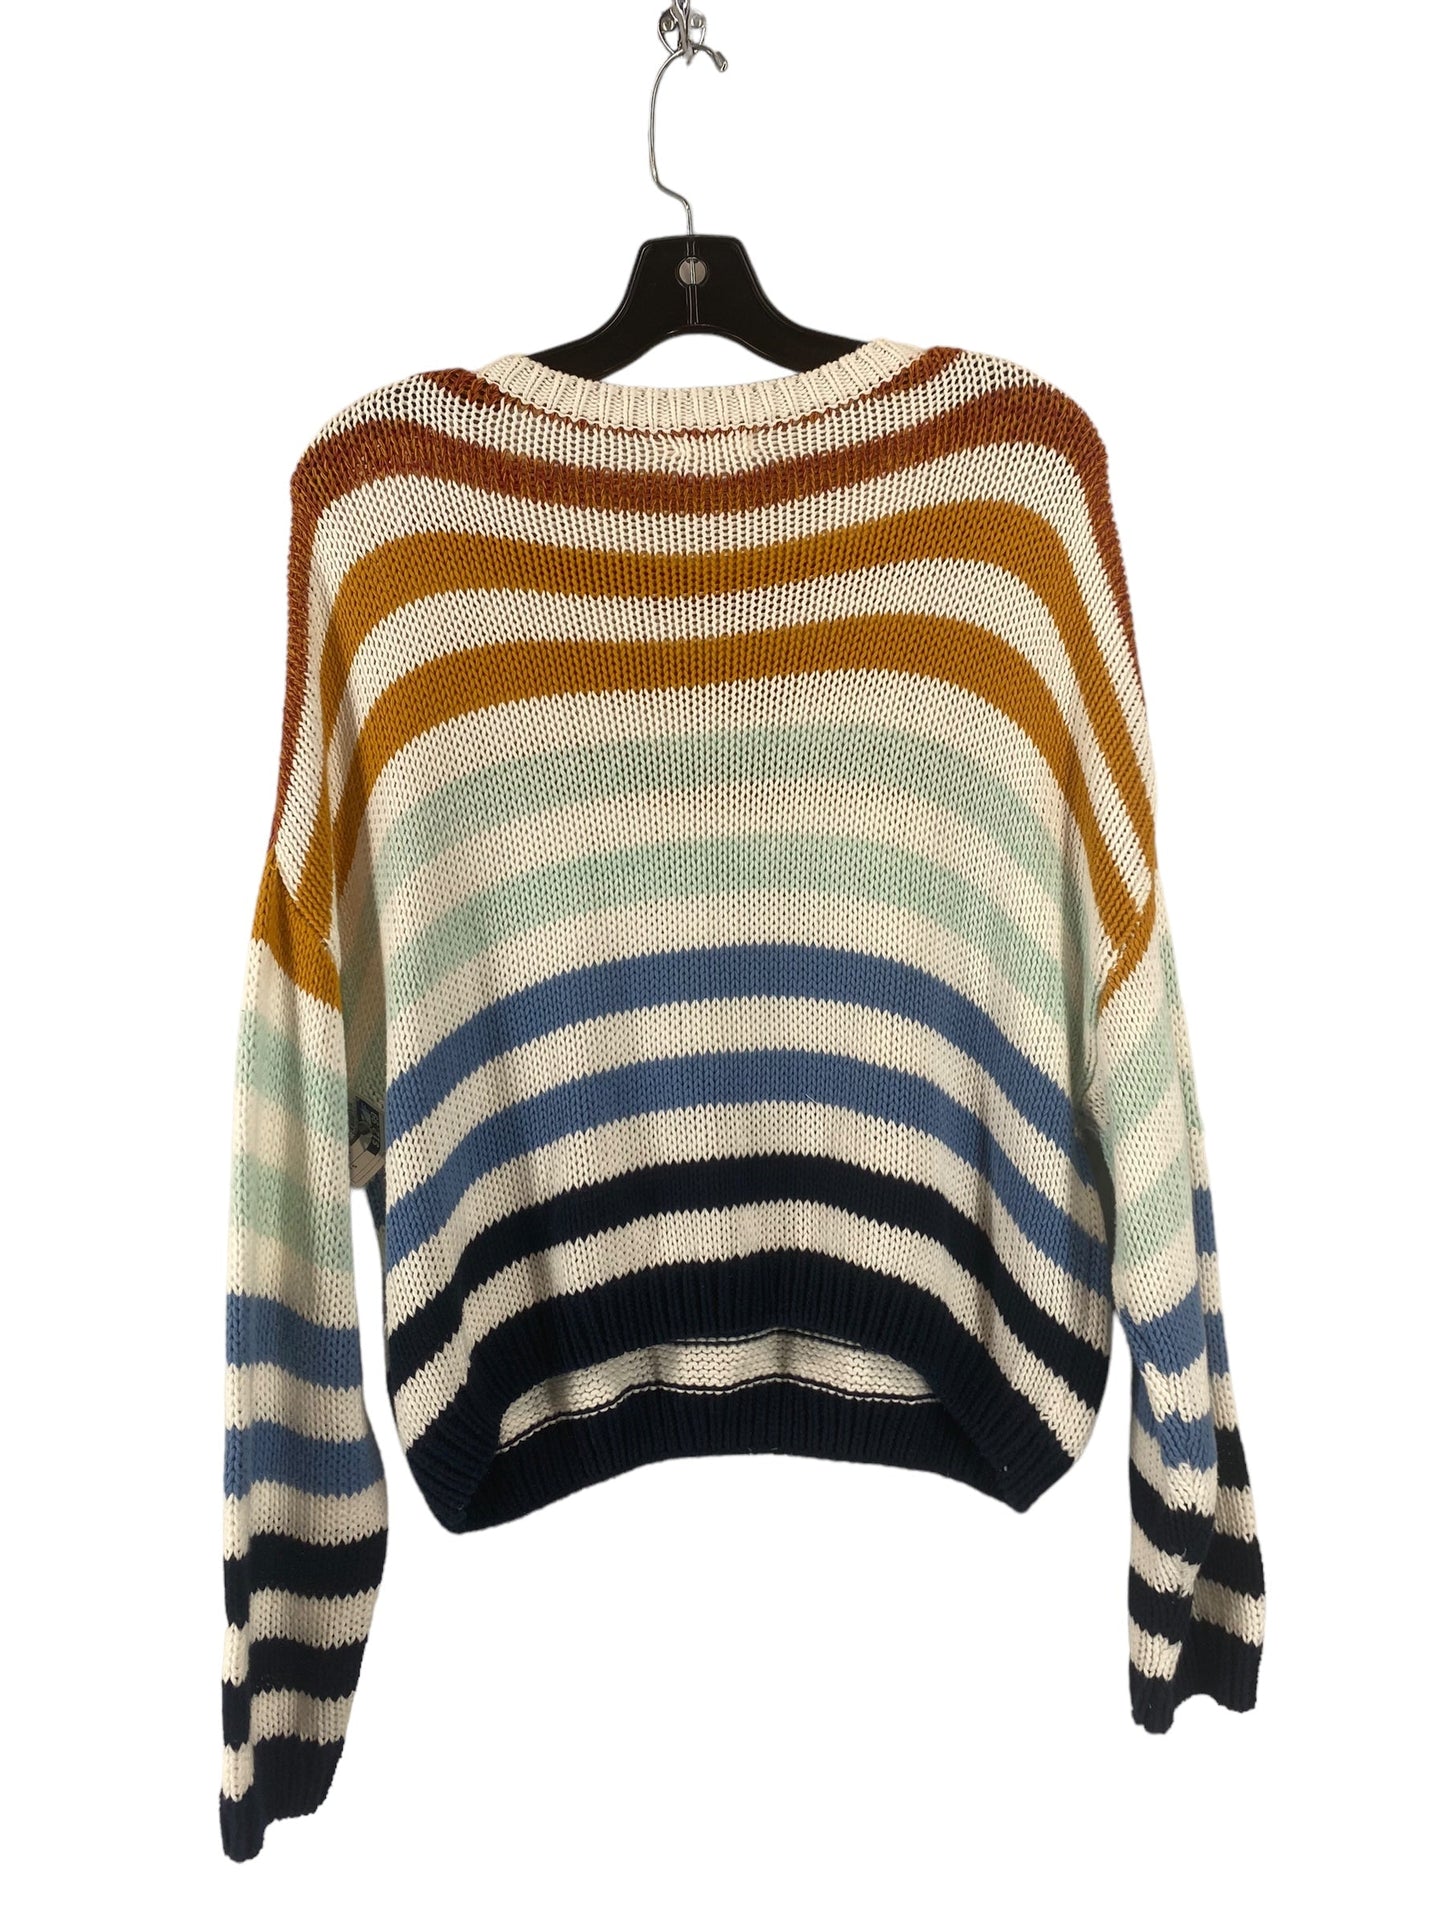 Multi-colored Sweater Harper, Size S